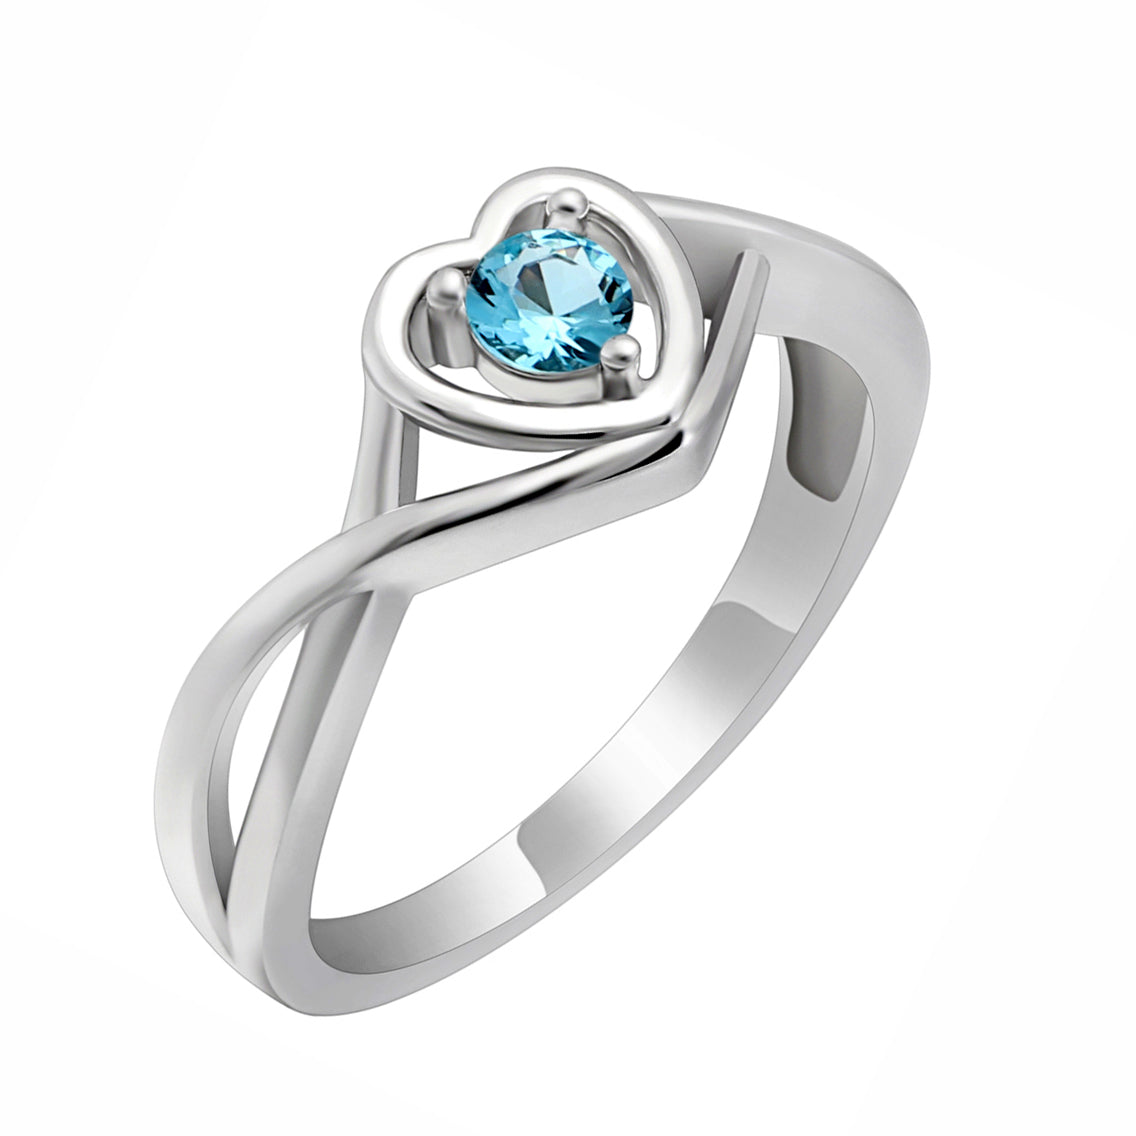 Christine Promise Ring Heart Engagement Women Silver Cz Ginger Lyne - March Light Blue,7